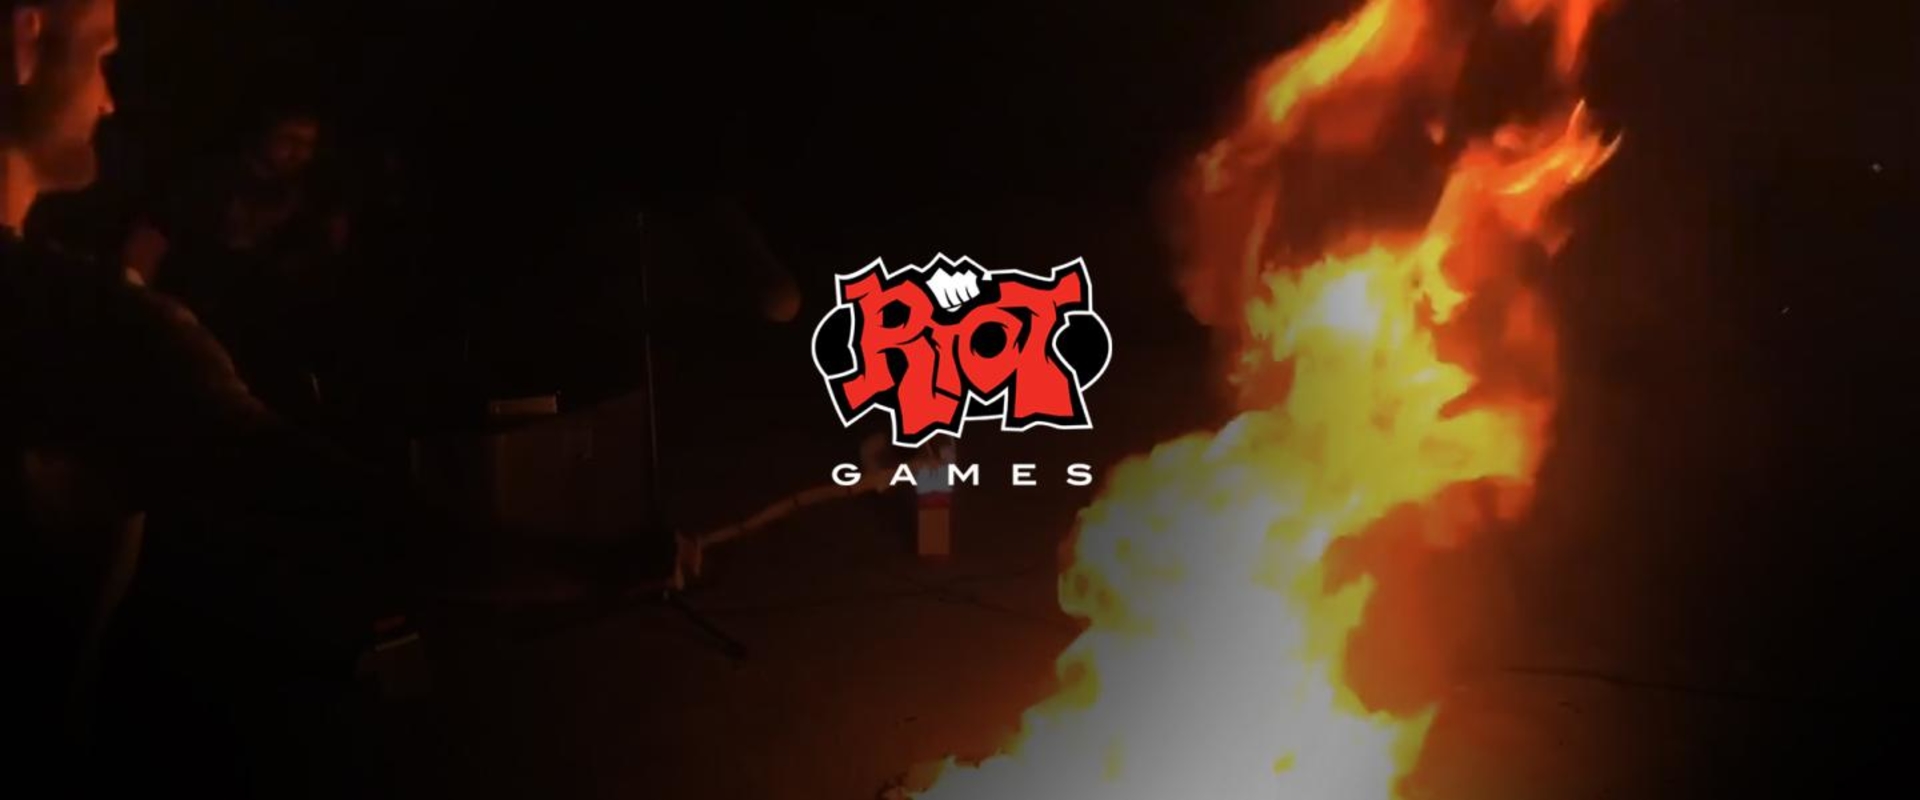 A Riot megmutatta, hogy miként is hozzák létre a játékon belüli hanghatásokat